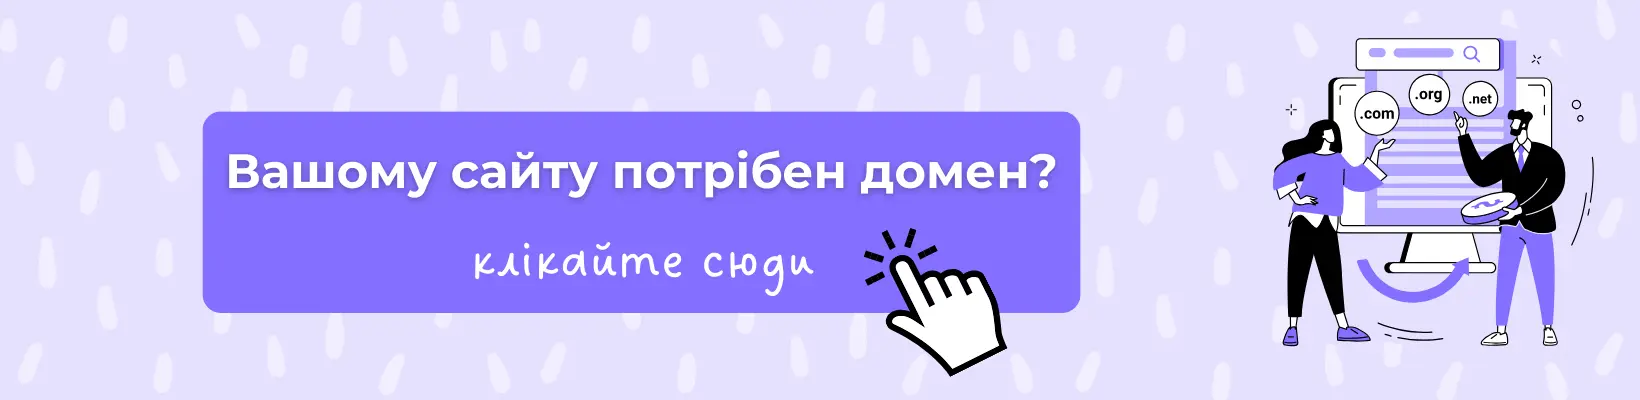 Де вигідно купити домен сайту в Україні